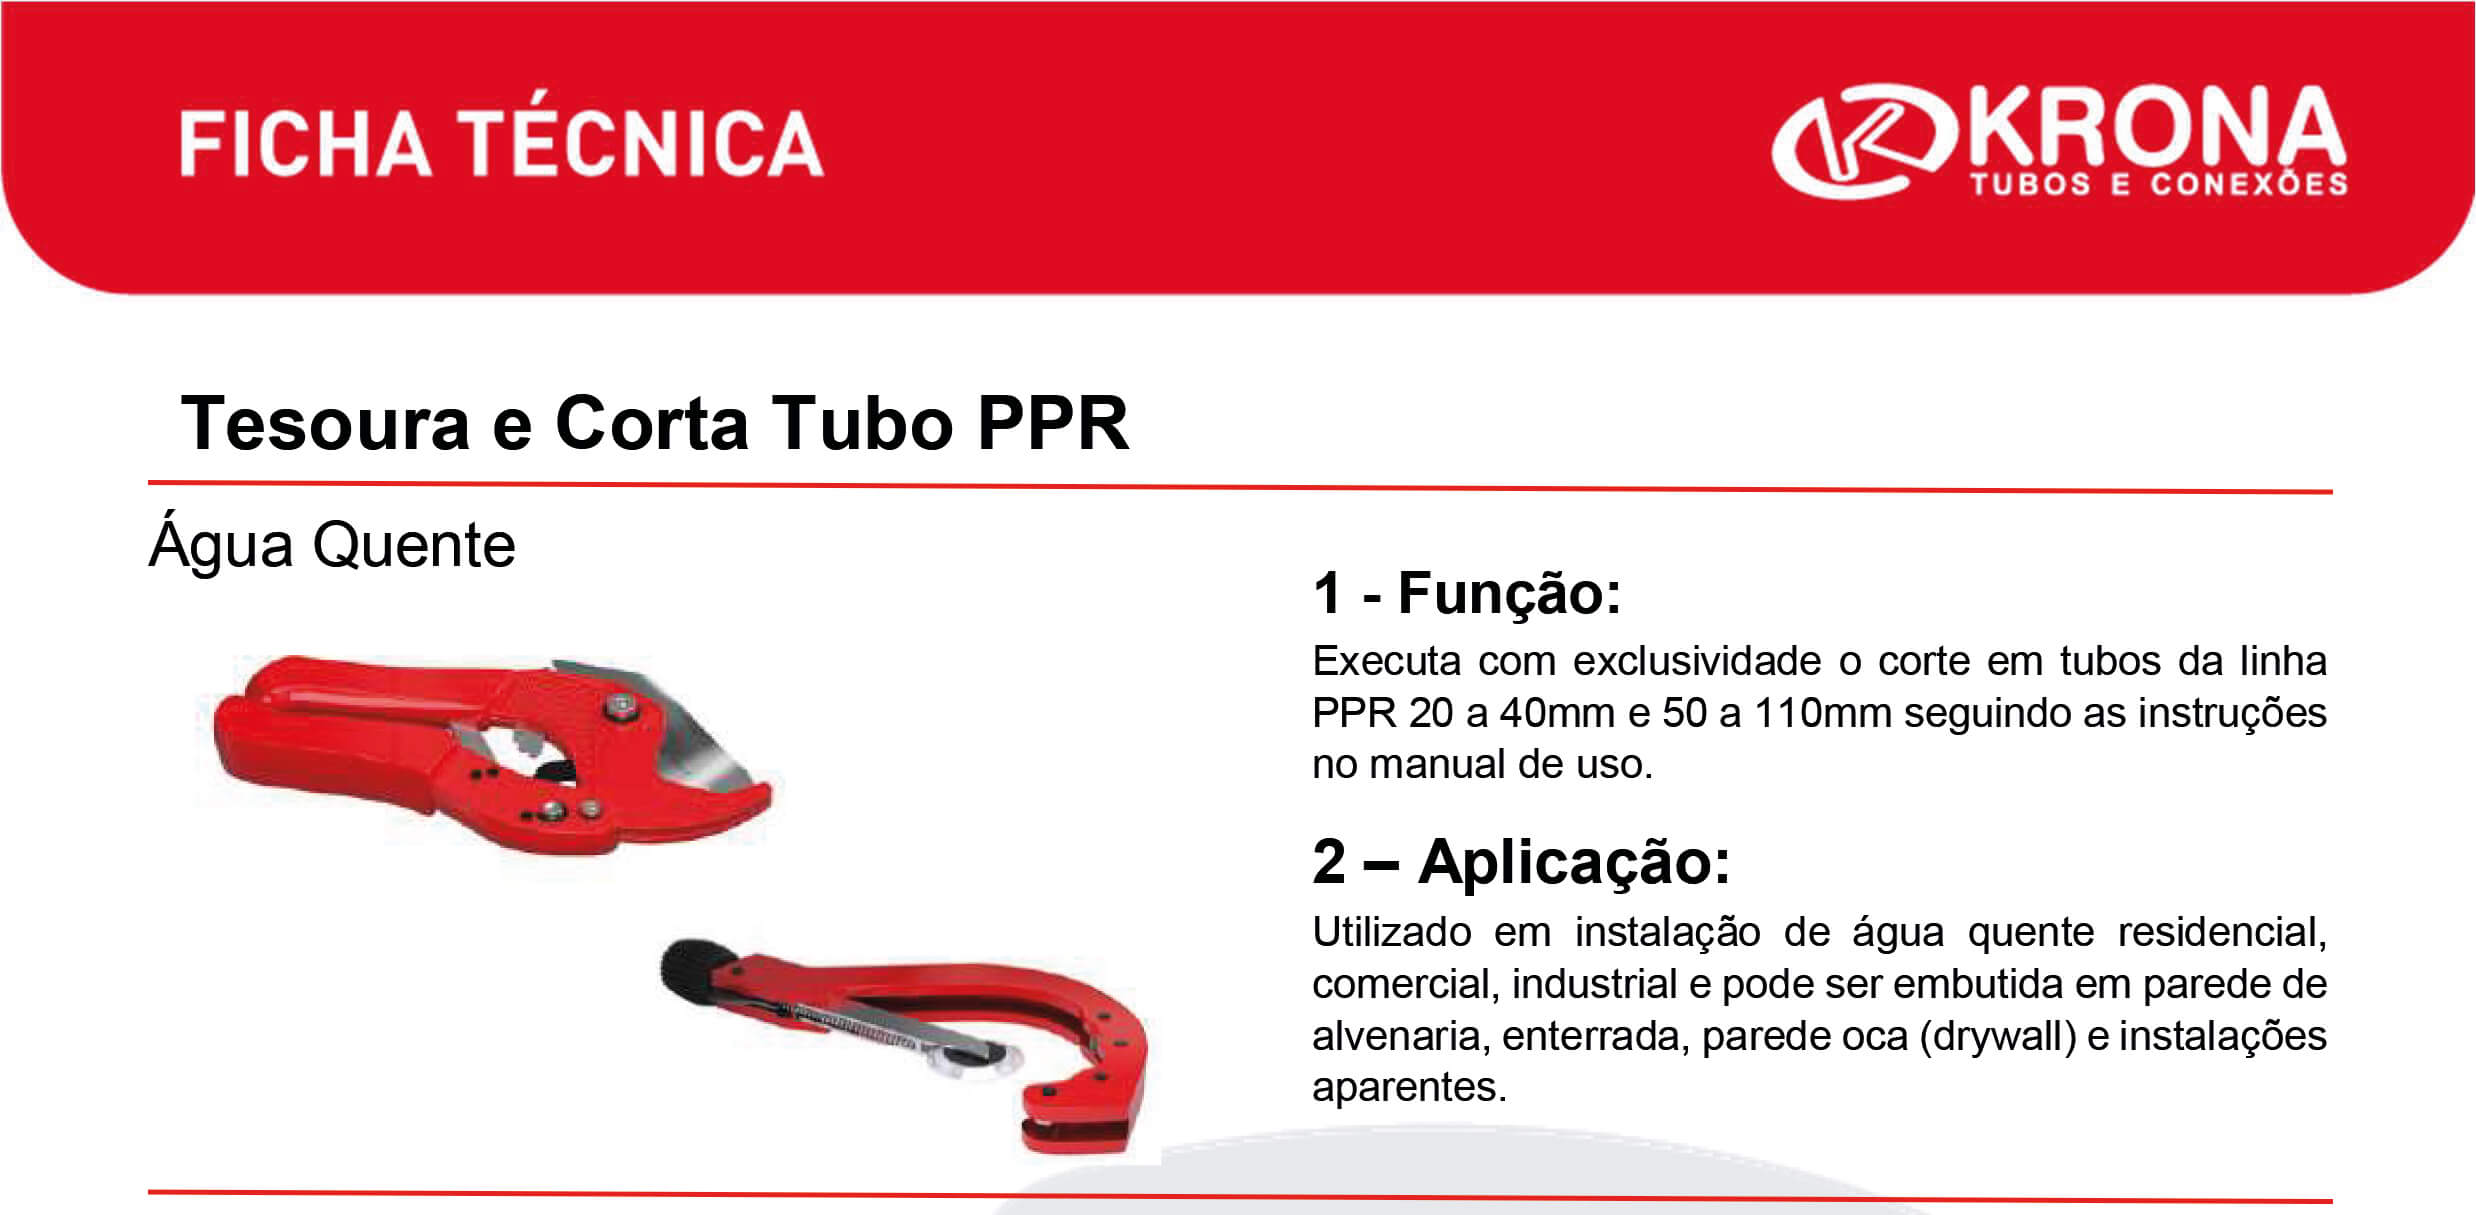 Ficha Técnica – Tesoura e Corta Tubo PPR